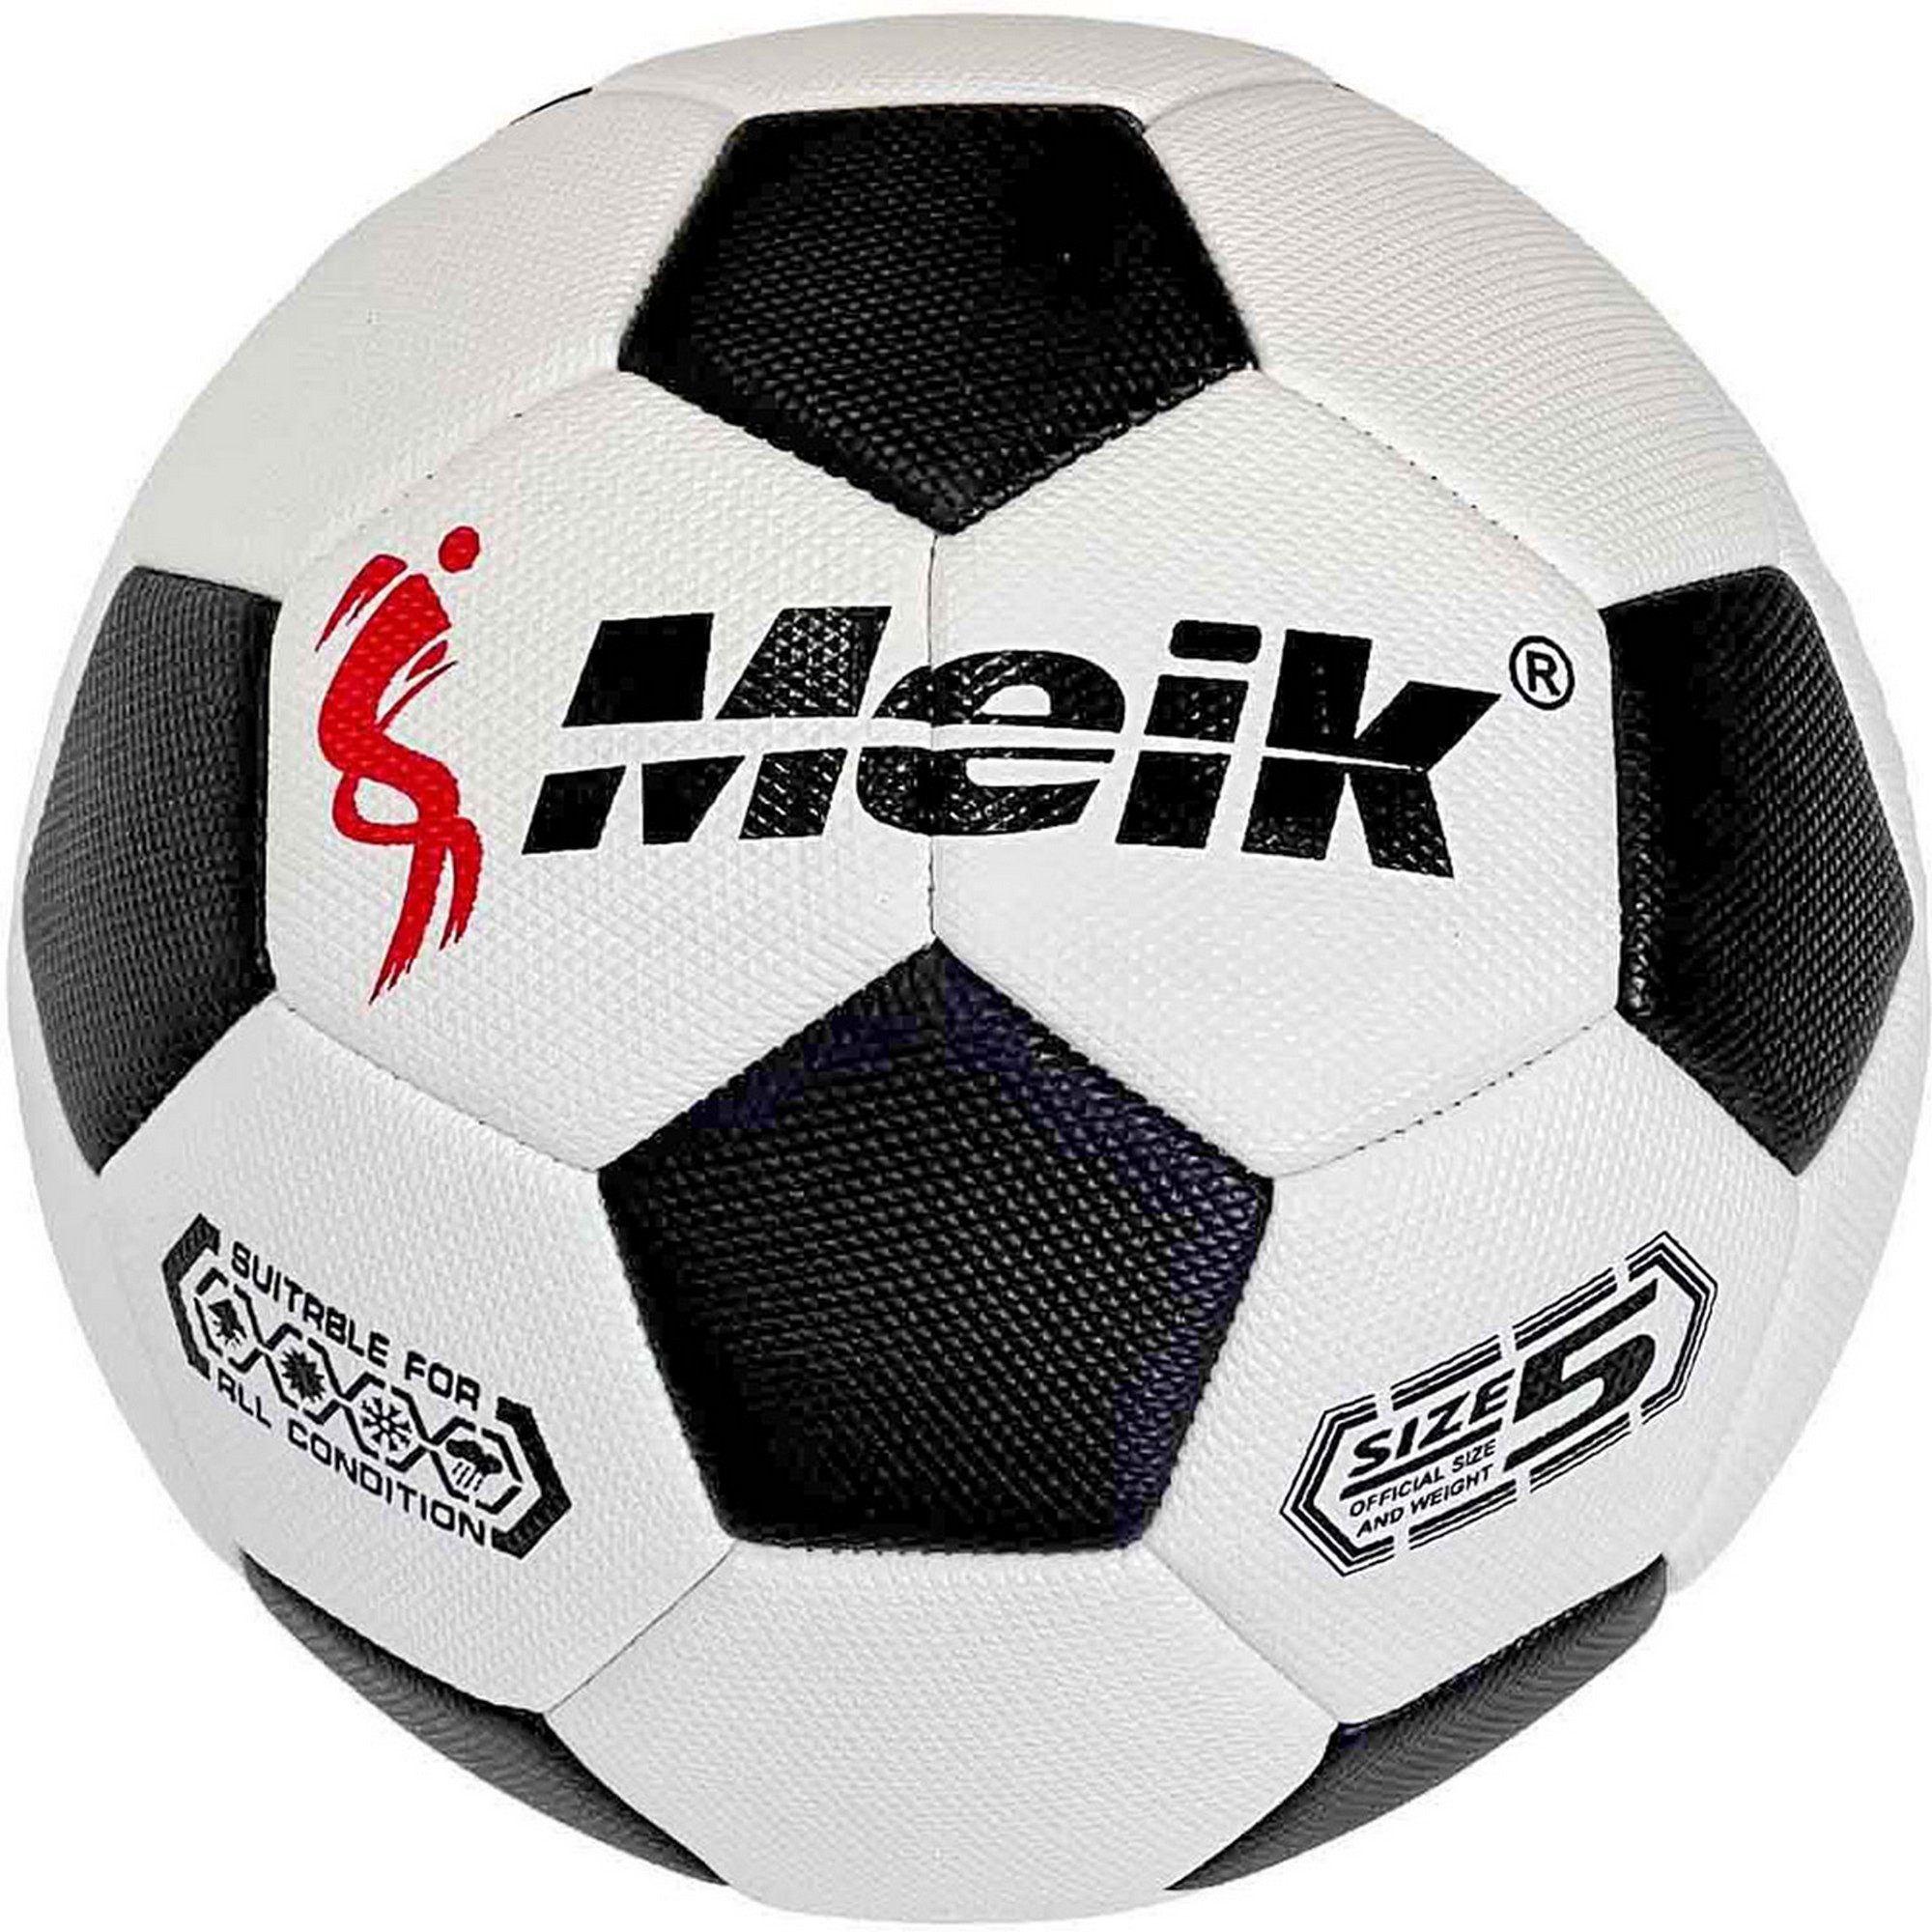 Мяч футбольный Meik E40793 р.5